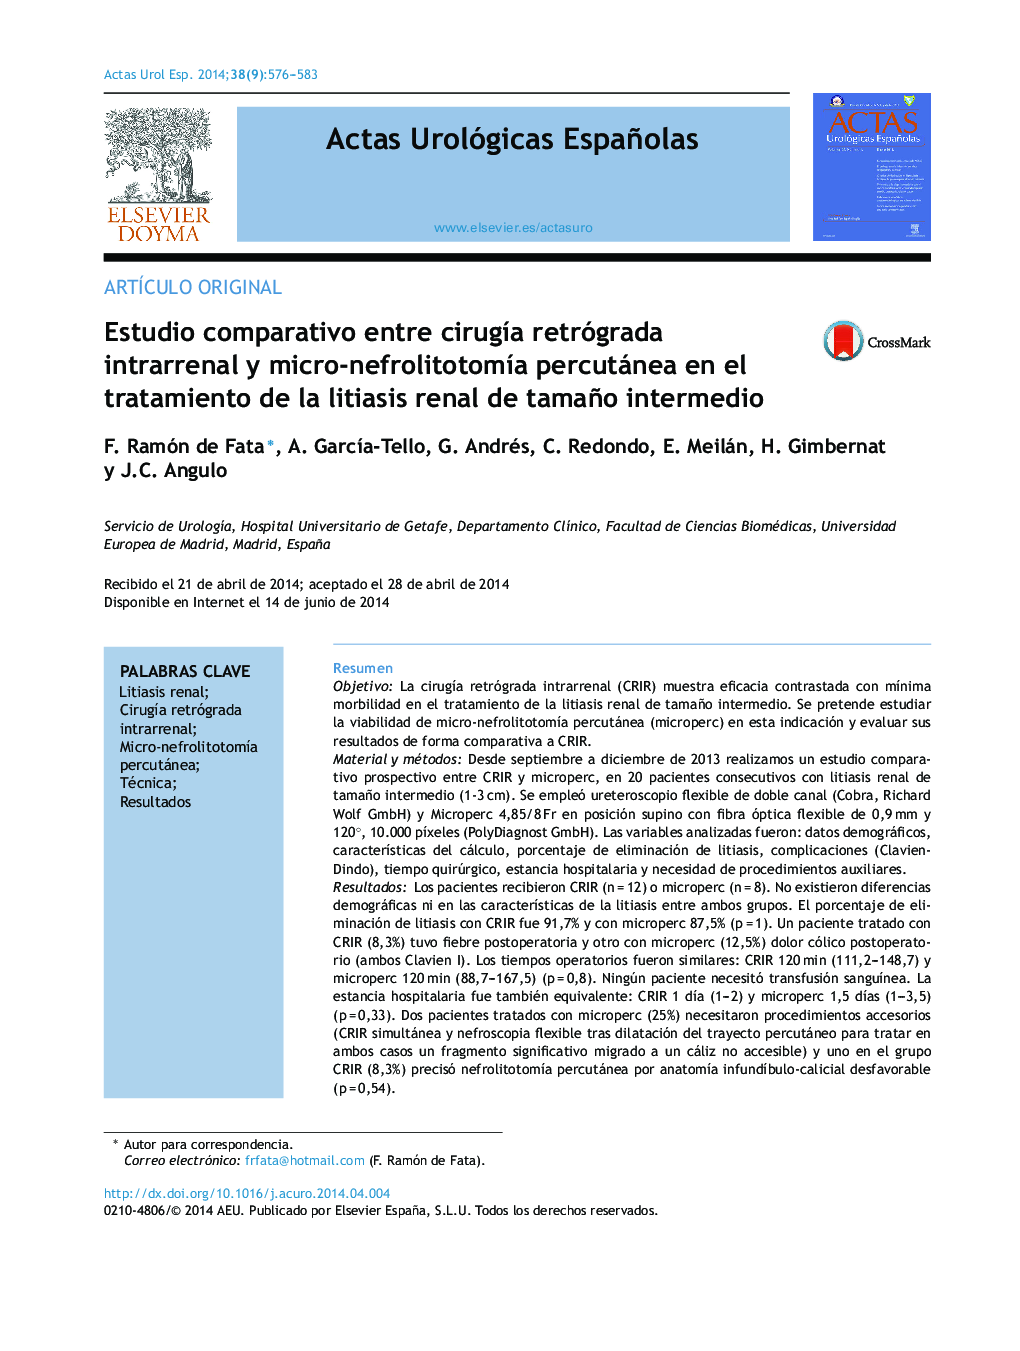 Estudio comparativo entre cirugía retrógrada intrarrenal y micro-nefrolitotomía percutánea en el tratamiento de la litiasis renal de tamaño intermedio